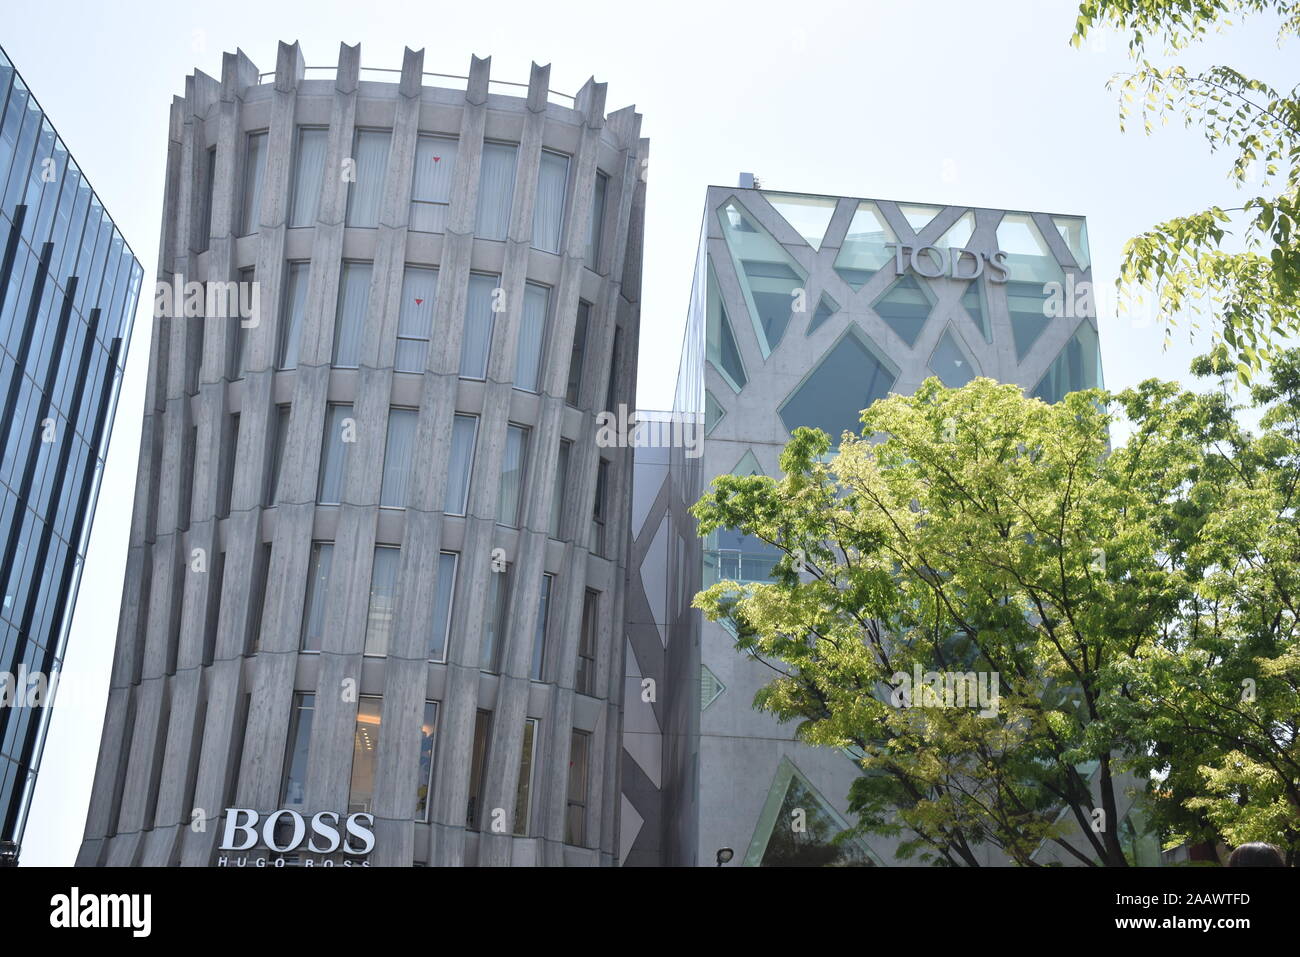 Das Äußere der Boss und Tod's Flagship Stores in Omotesando Bezirk in Tokyo, Japan Stockfoto